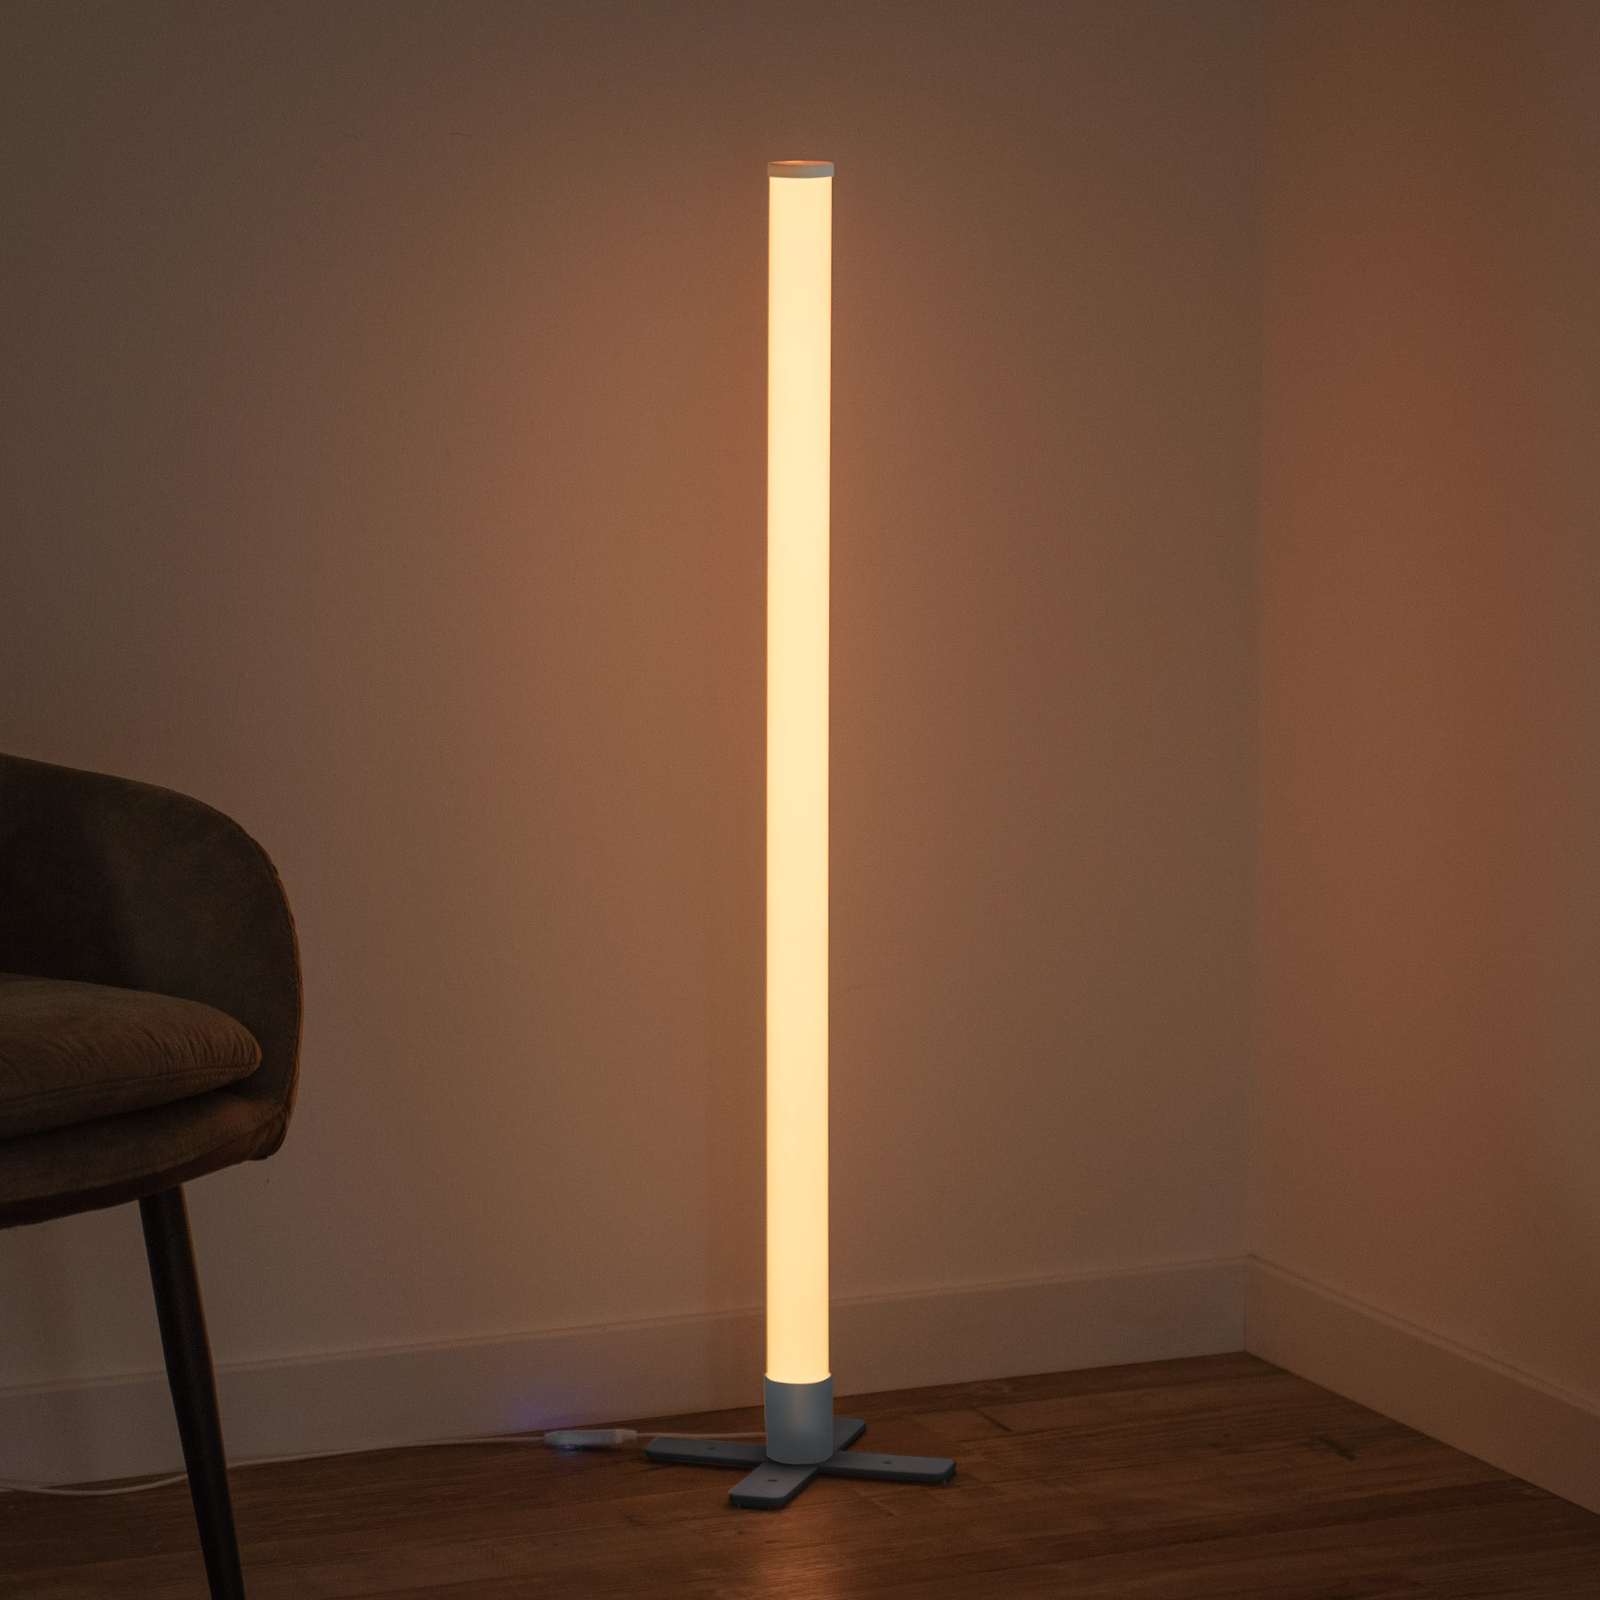 LED stojacia lampa Ringo, RGB s 3 režimami synchronizácie hudby